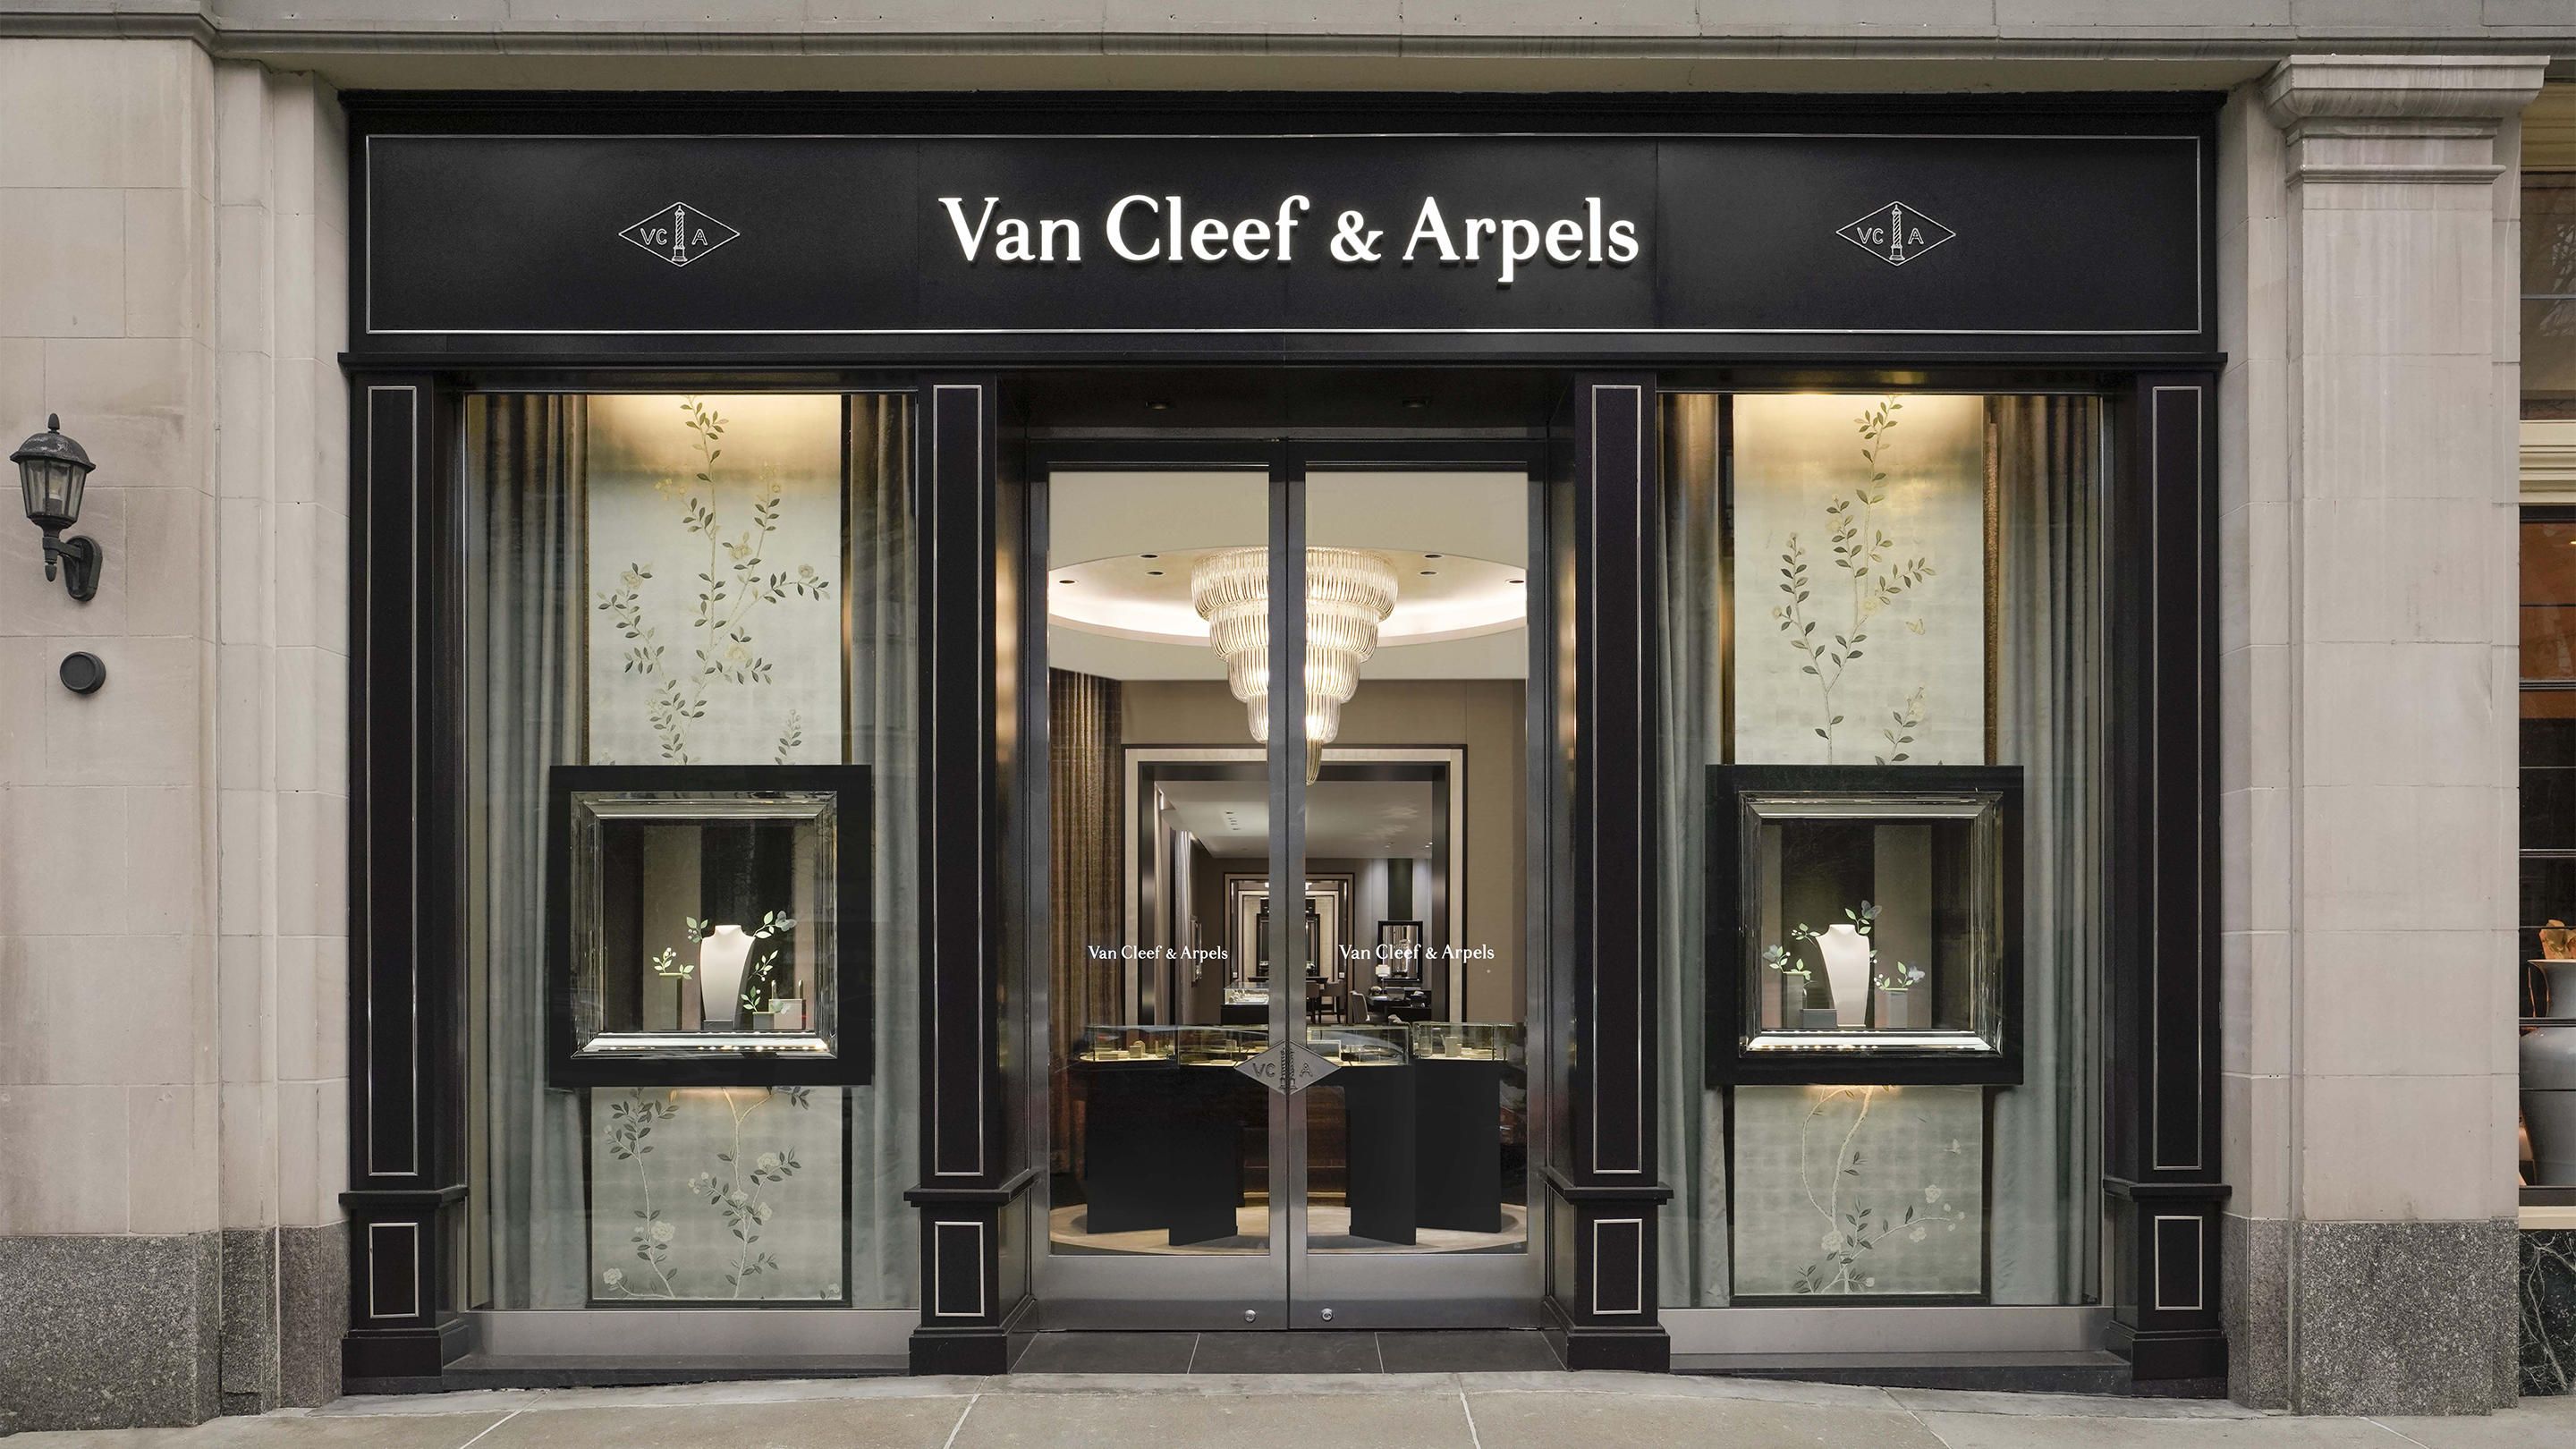 Image 2 | Van Cleef & Arpels (Boston - Newbury Street)